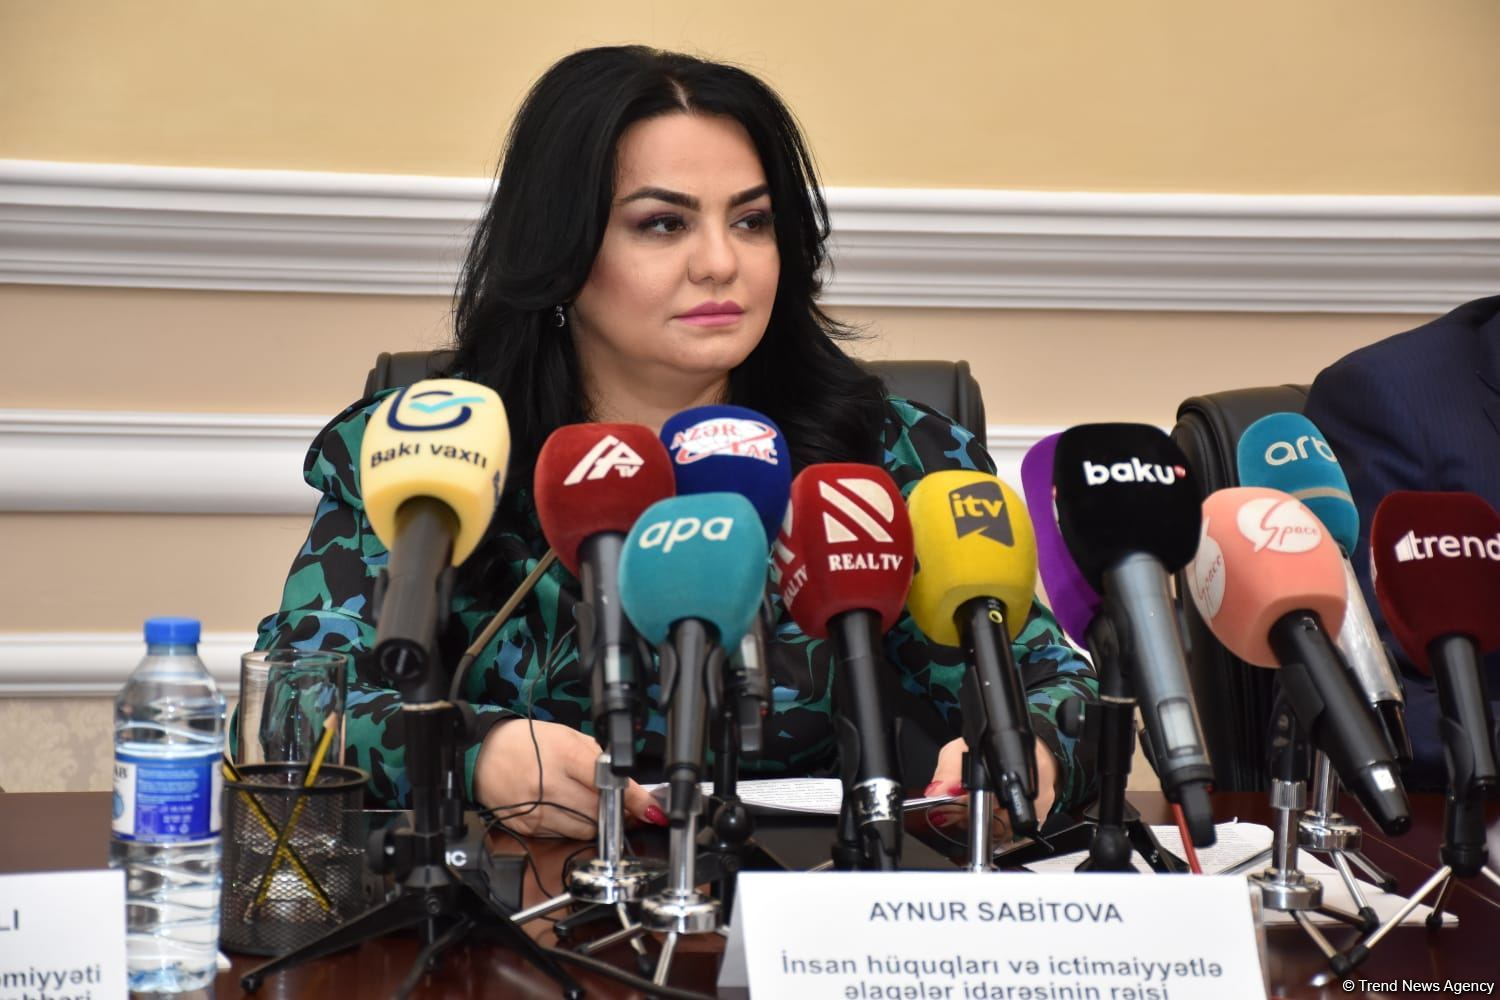 В Азербайджане создана мониторинговая группа для расследования обращений, связанных с амнистией - минюст